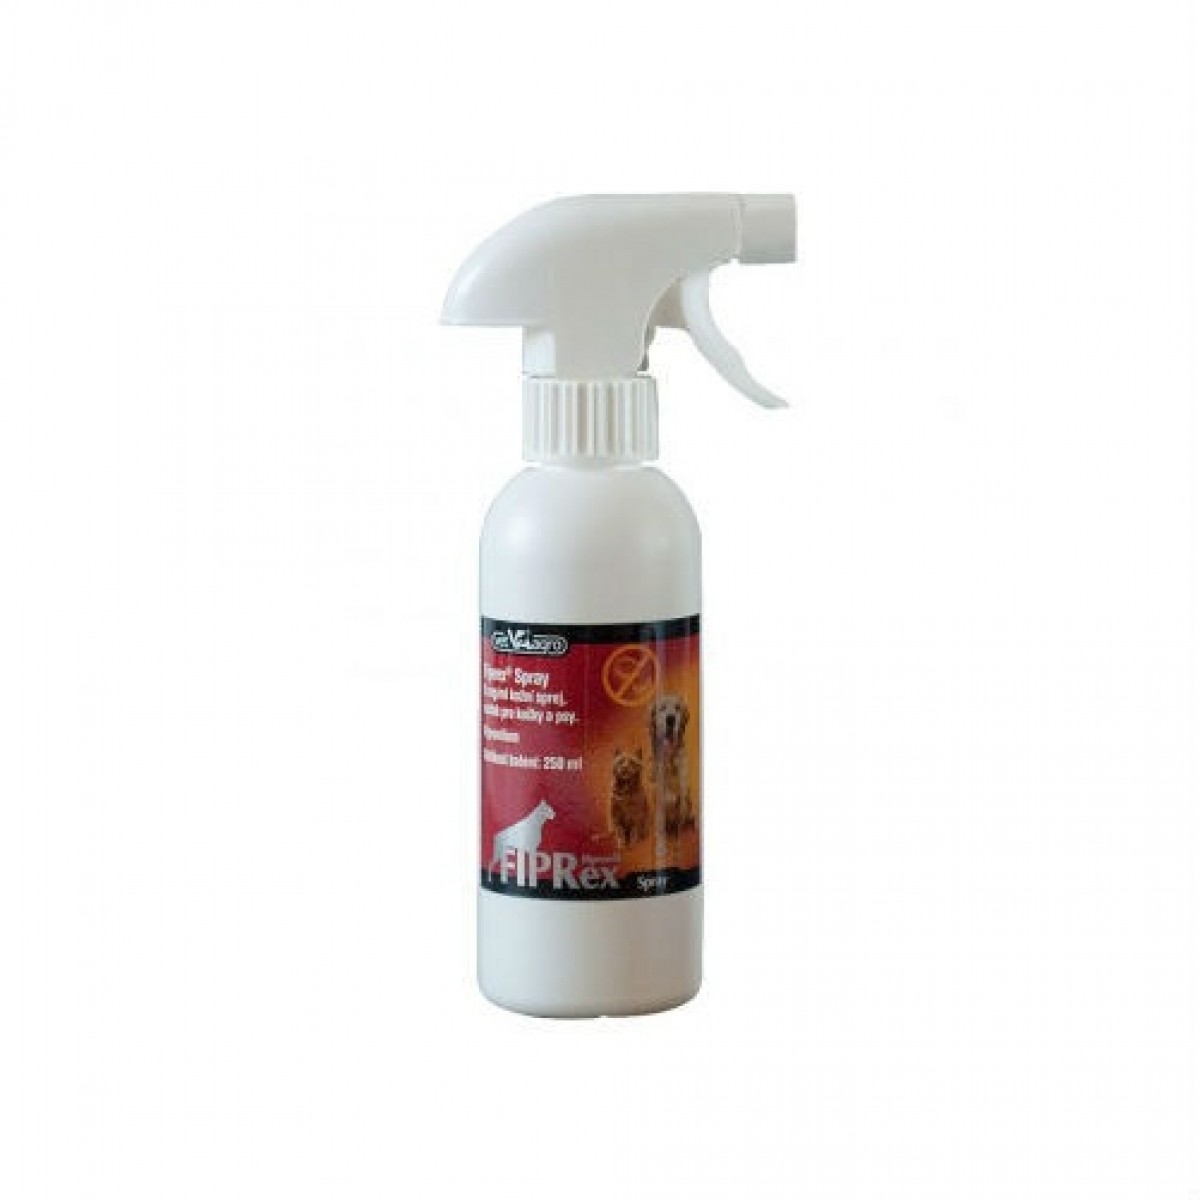 Fiprex Spray pentru caini si pisici 250ml, Antiparazitare externe, Antiparazitare, Câini 